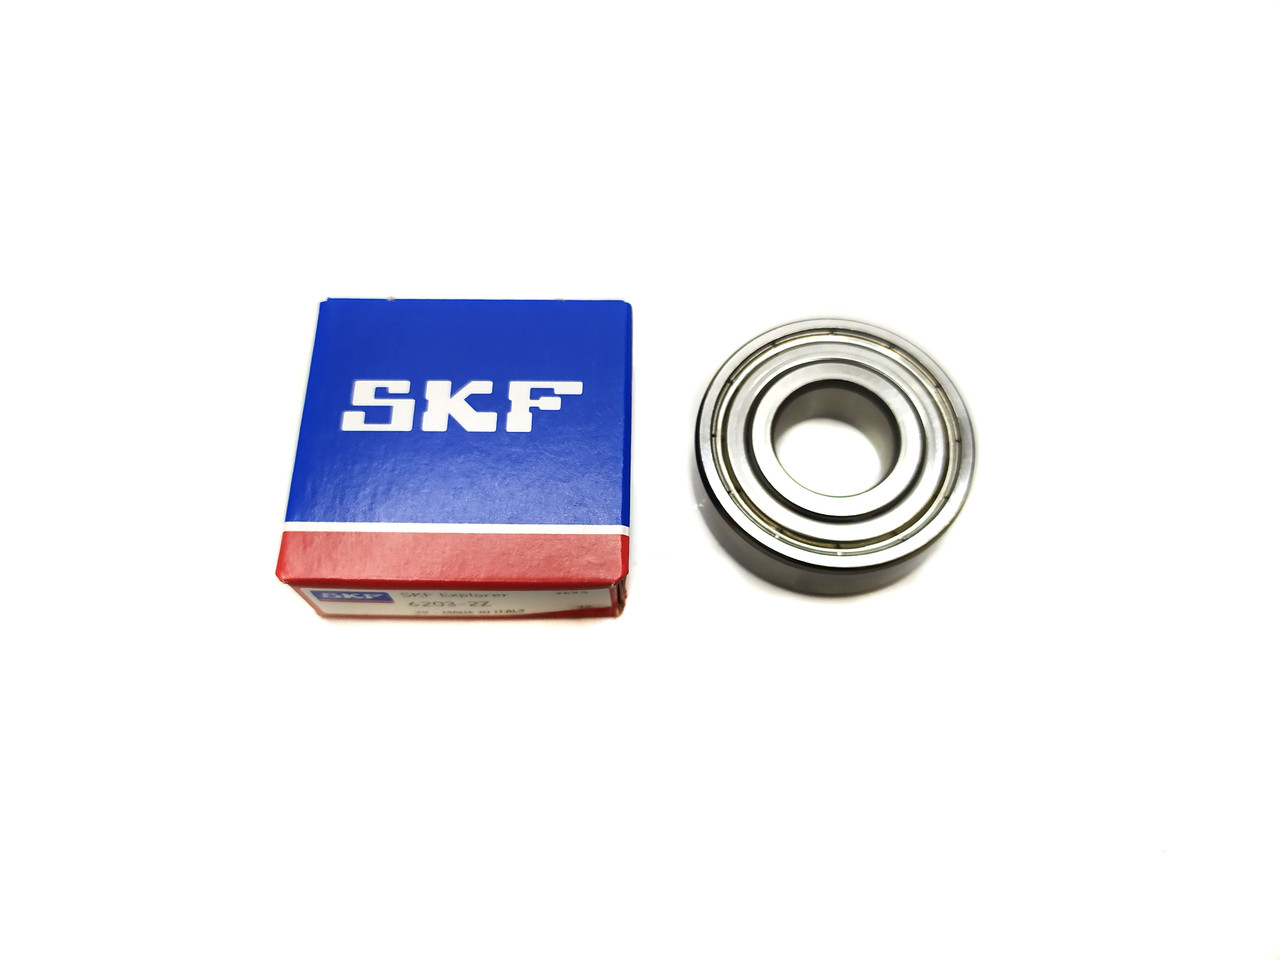 Підшипник SKF 6204 у коробці